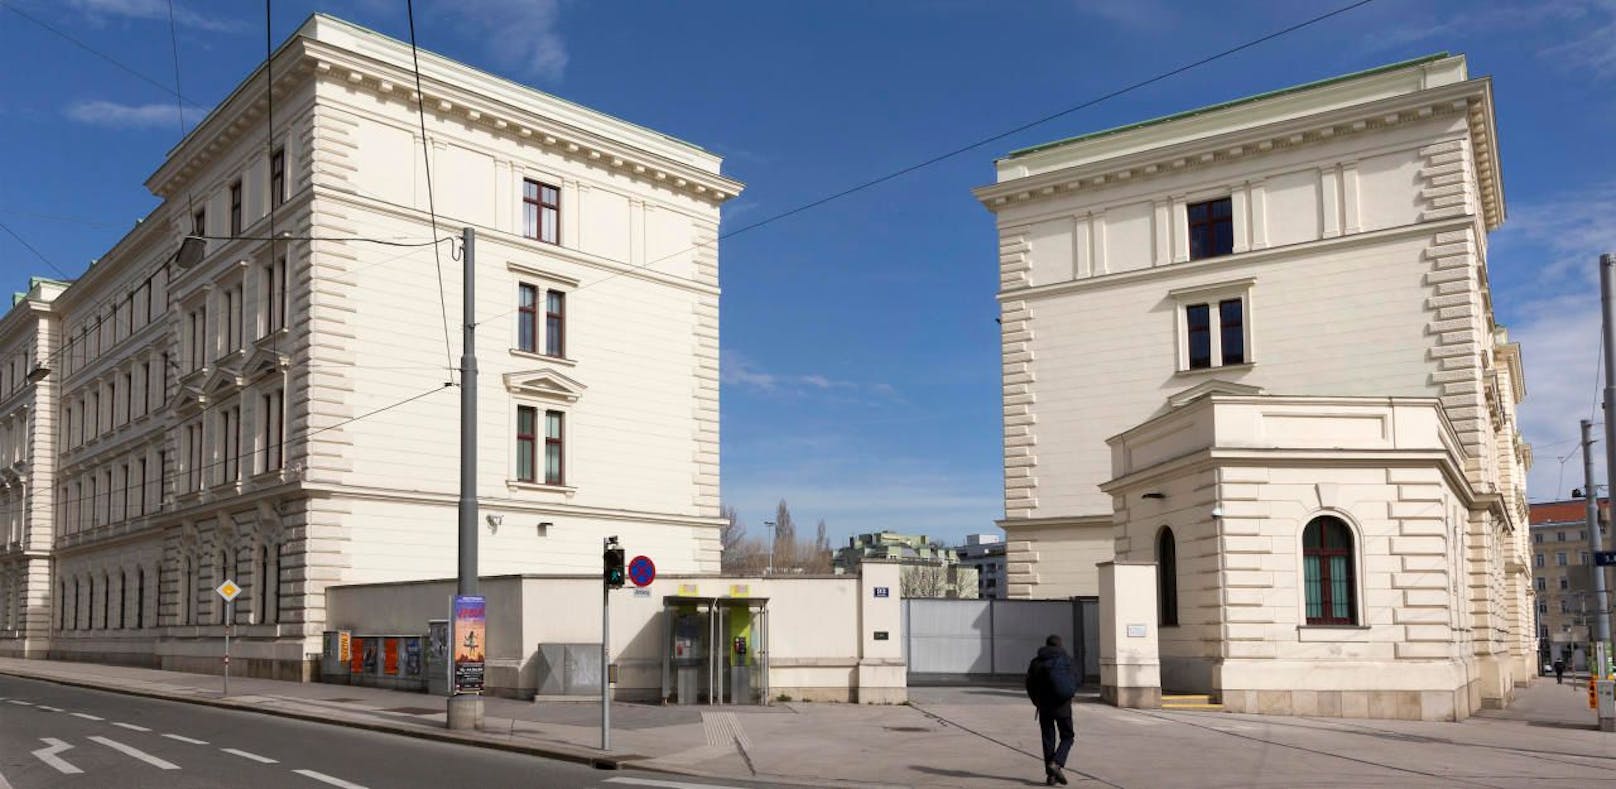 Das Bundesamt für Verfassungsschutz und Terrorismusbekämpfung (BVT) in Wien.